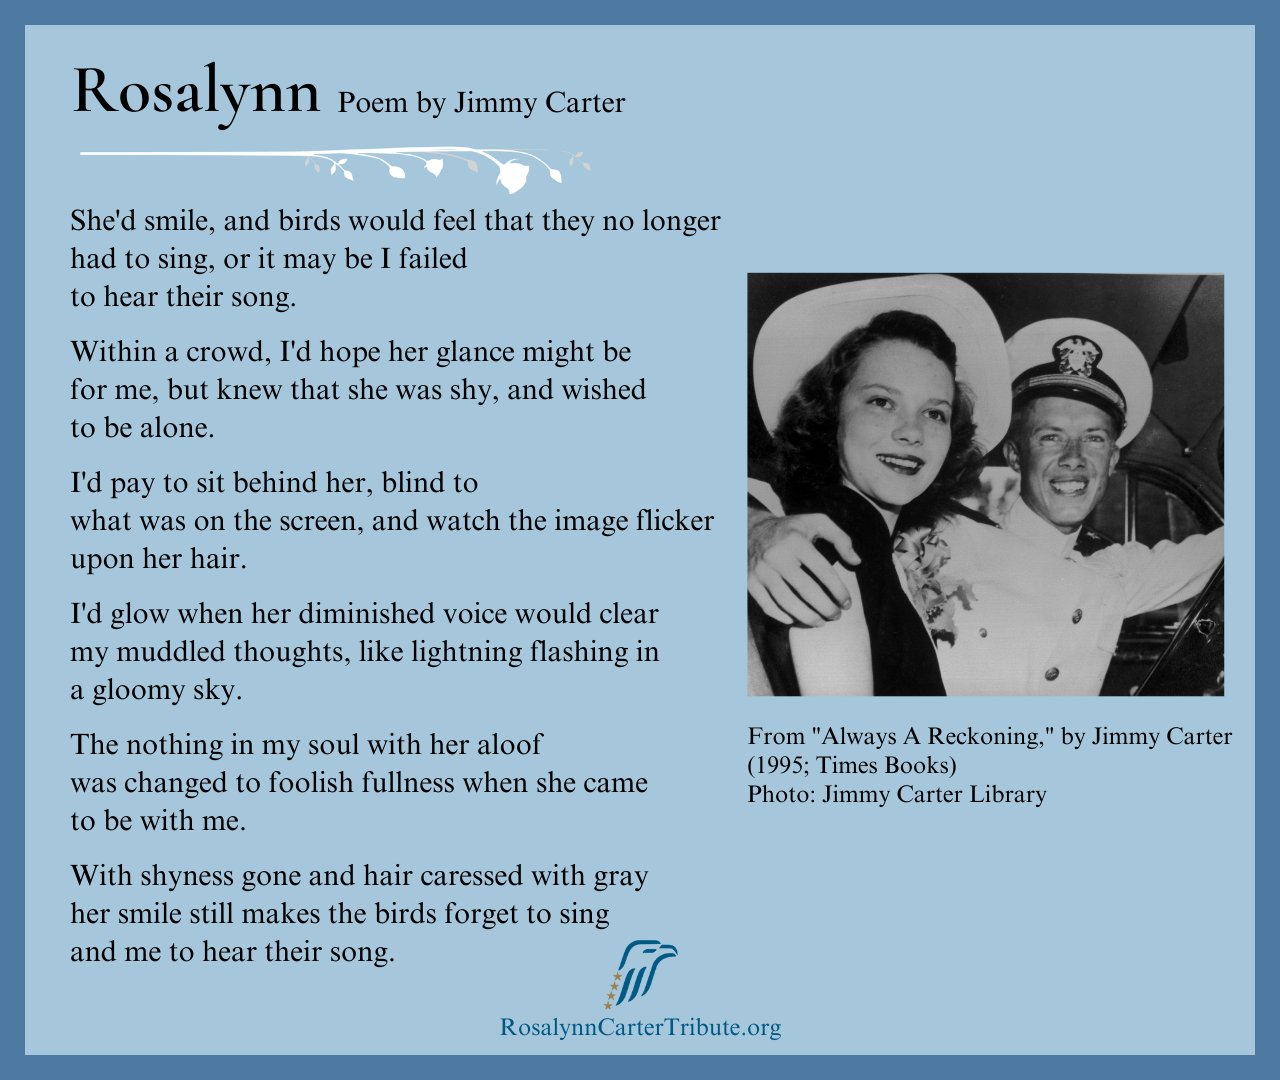 The Carter Center
@CarterCenter
Read Rosalynn, a beautiful poem written by President Carter in 1995.